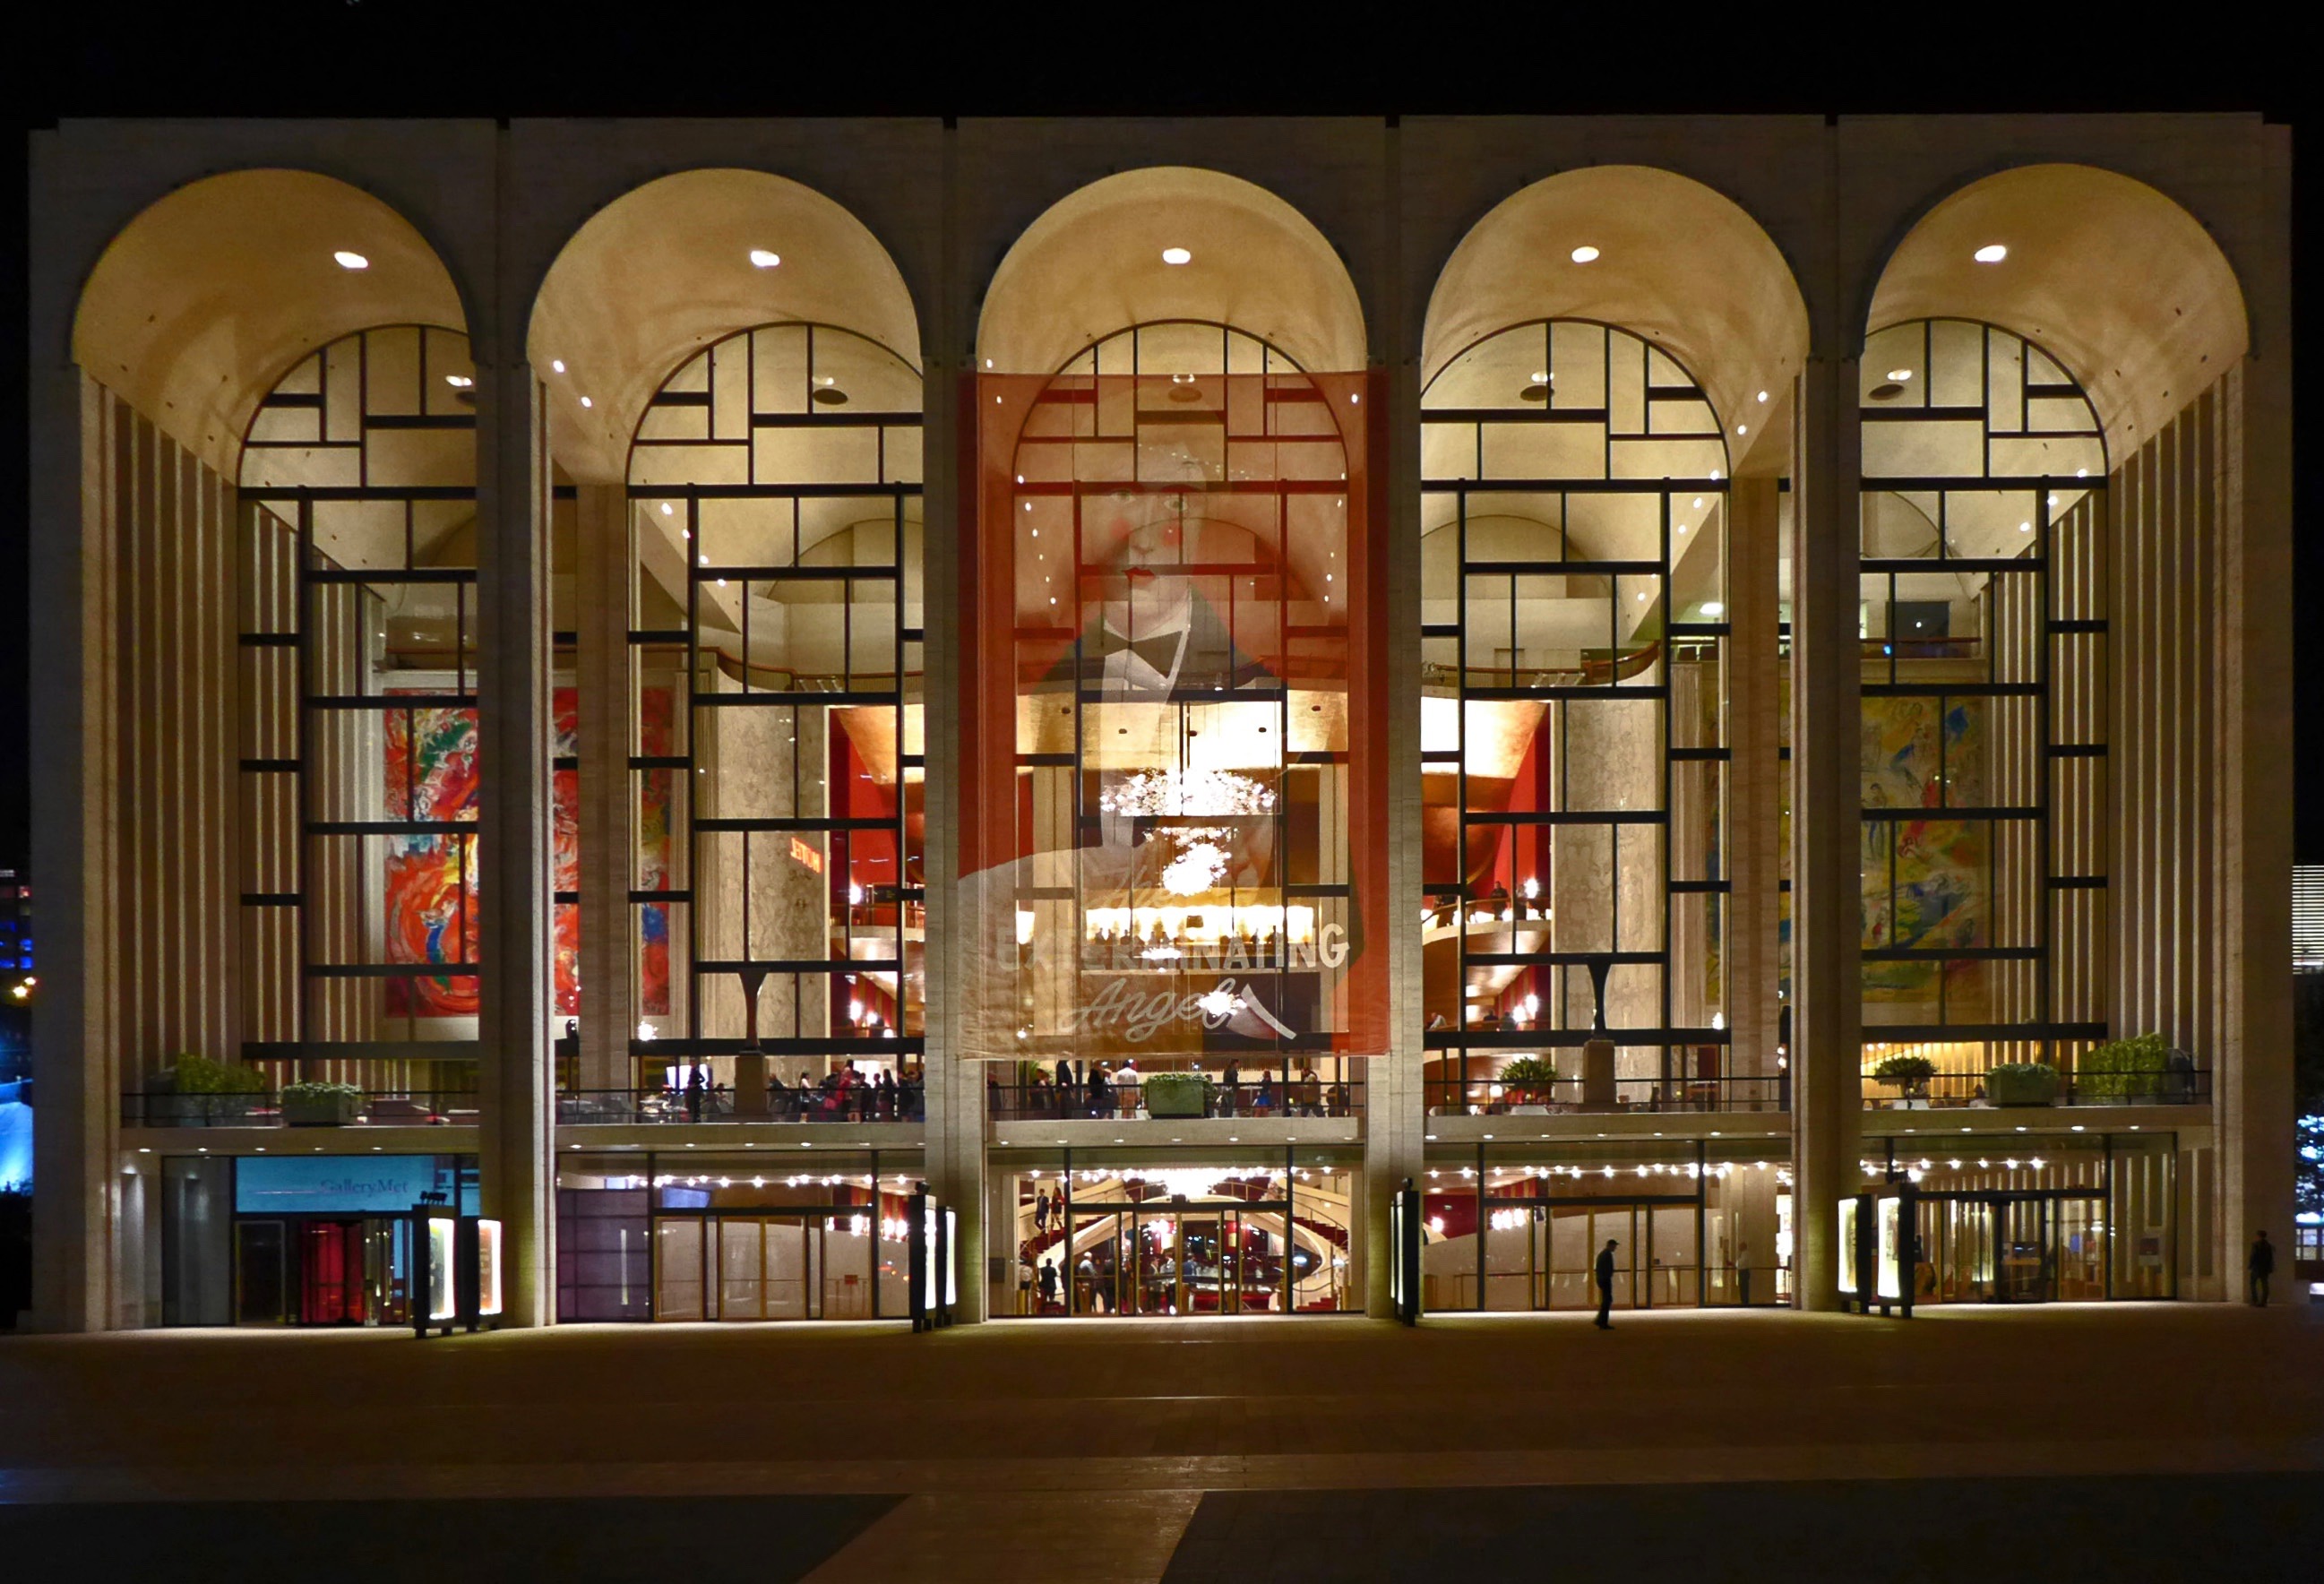 メトロポリタンオペラ [The Metropolitan Opera] – 猫の目ニューヨーク